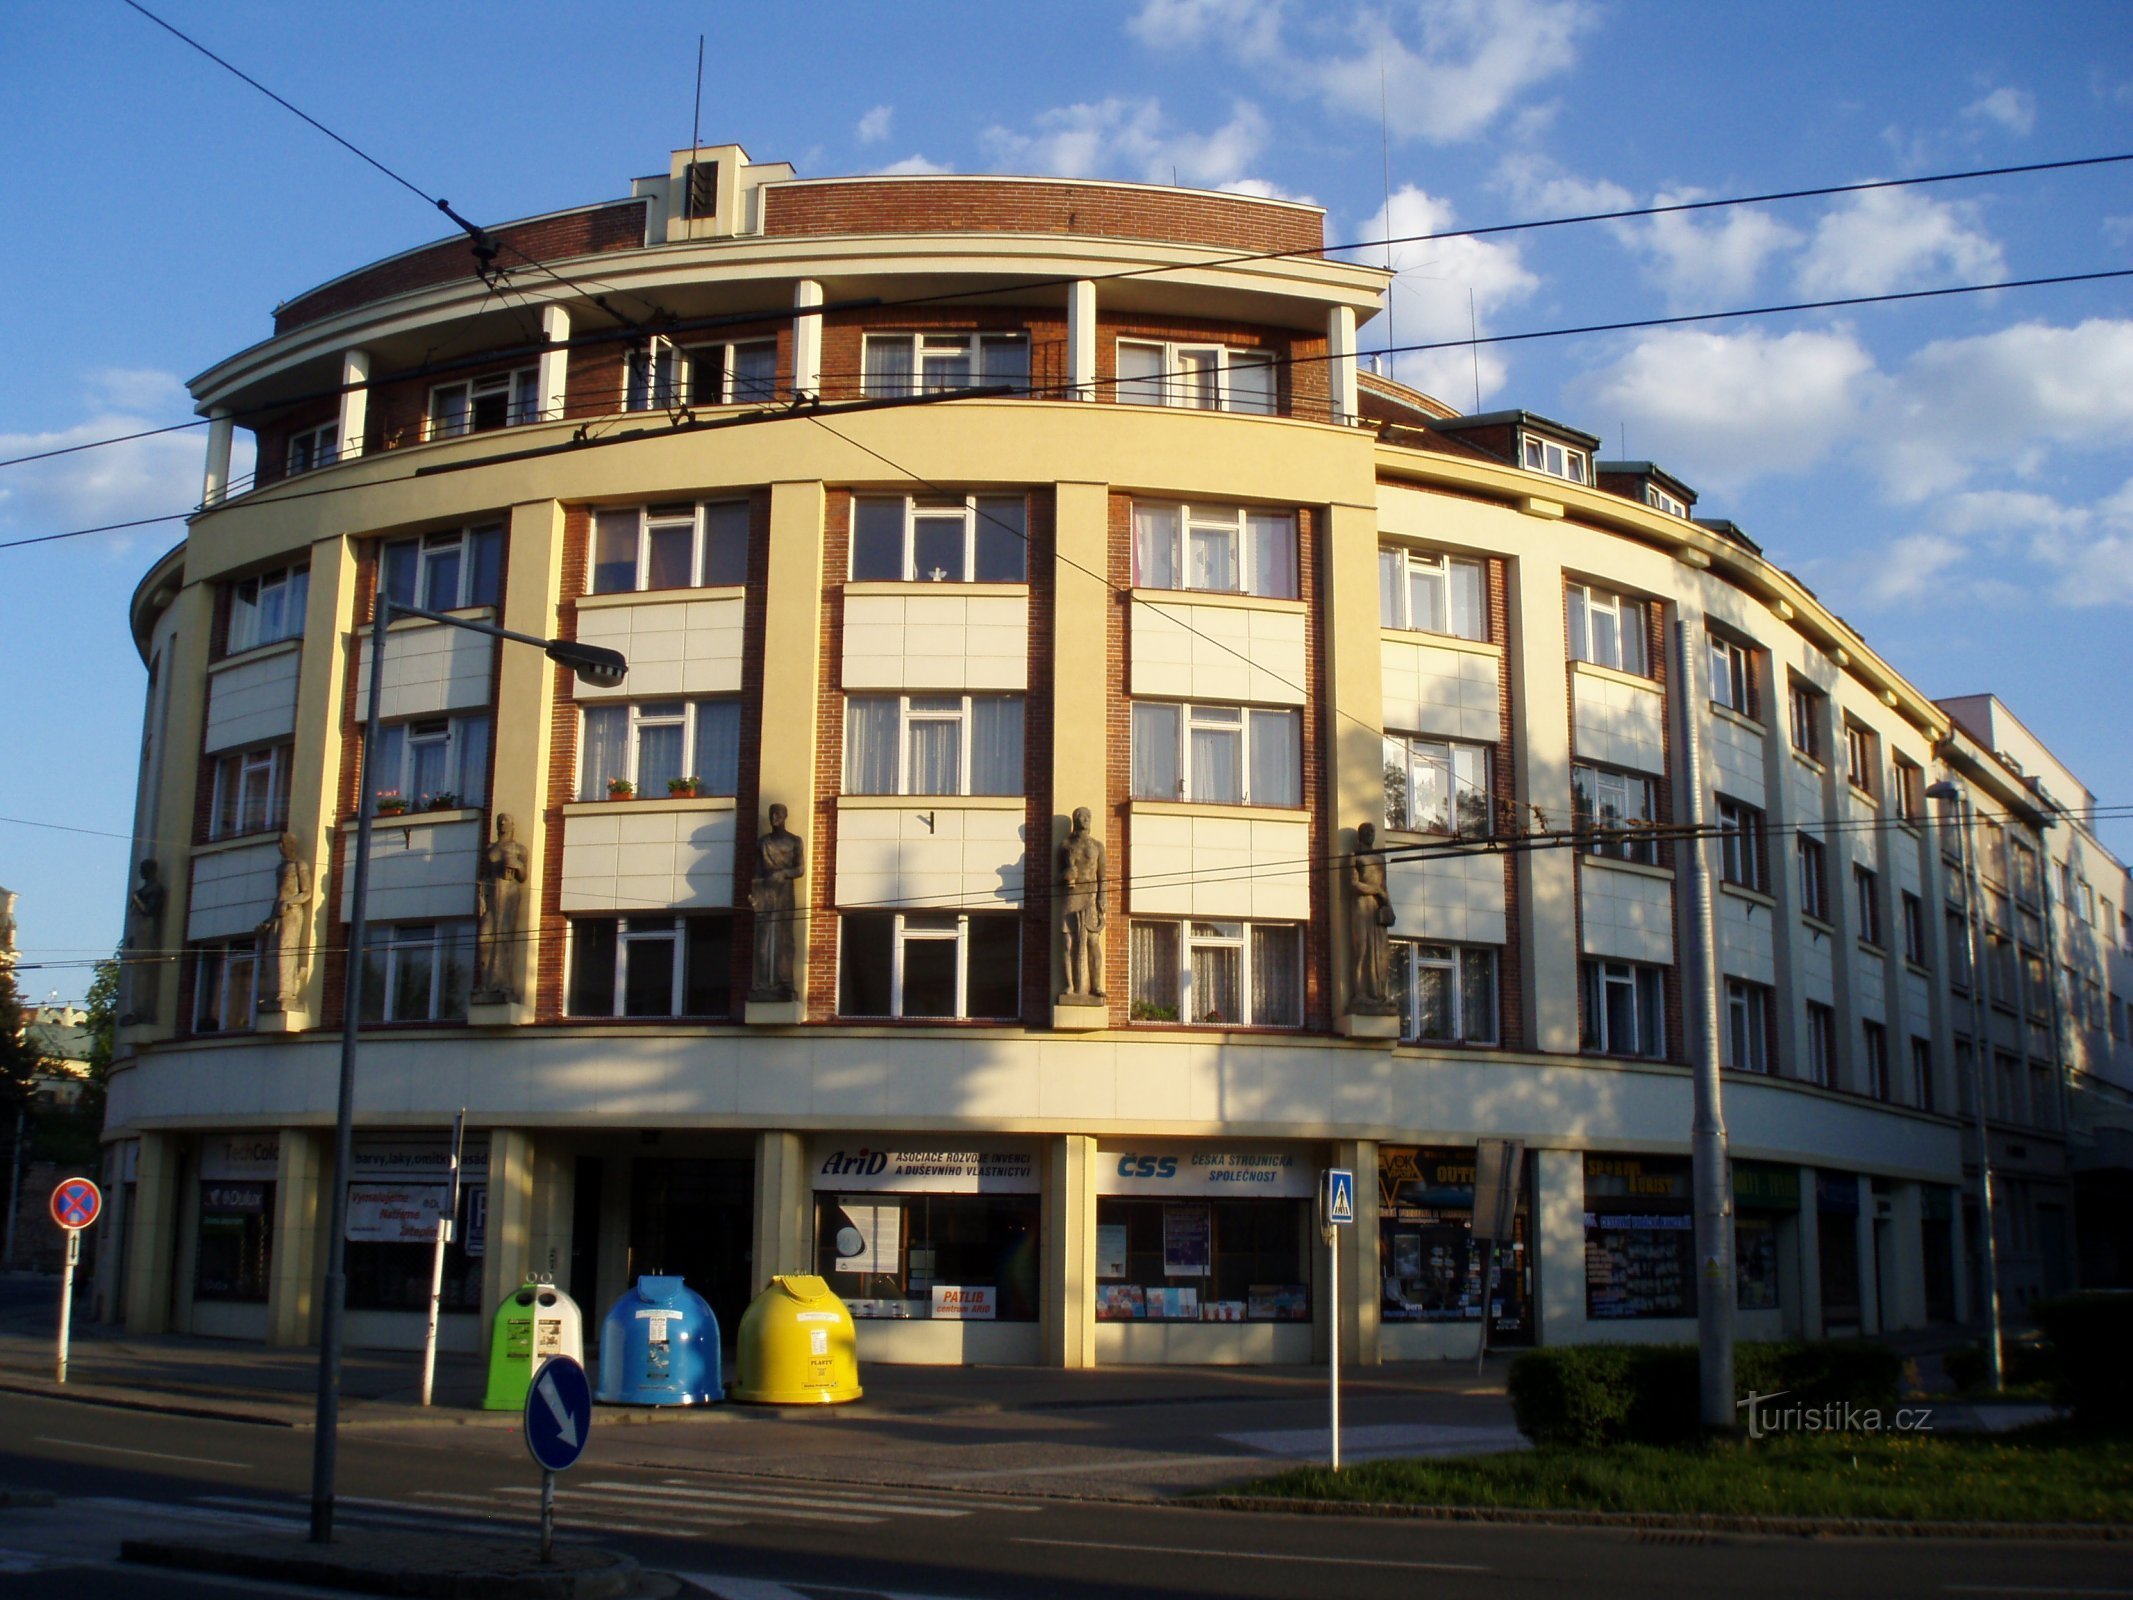 La prima compagnia di mutua assicurazione ceca (Hradec Králové, 1.5.2012 maggio XNUMX)